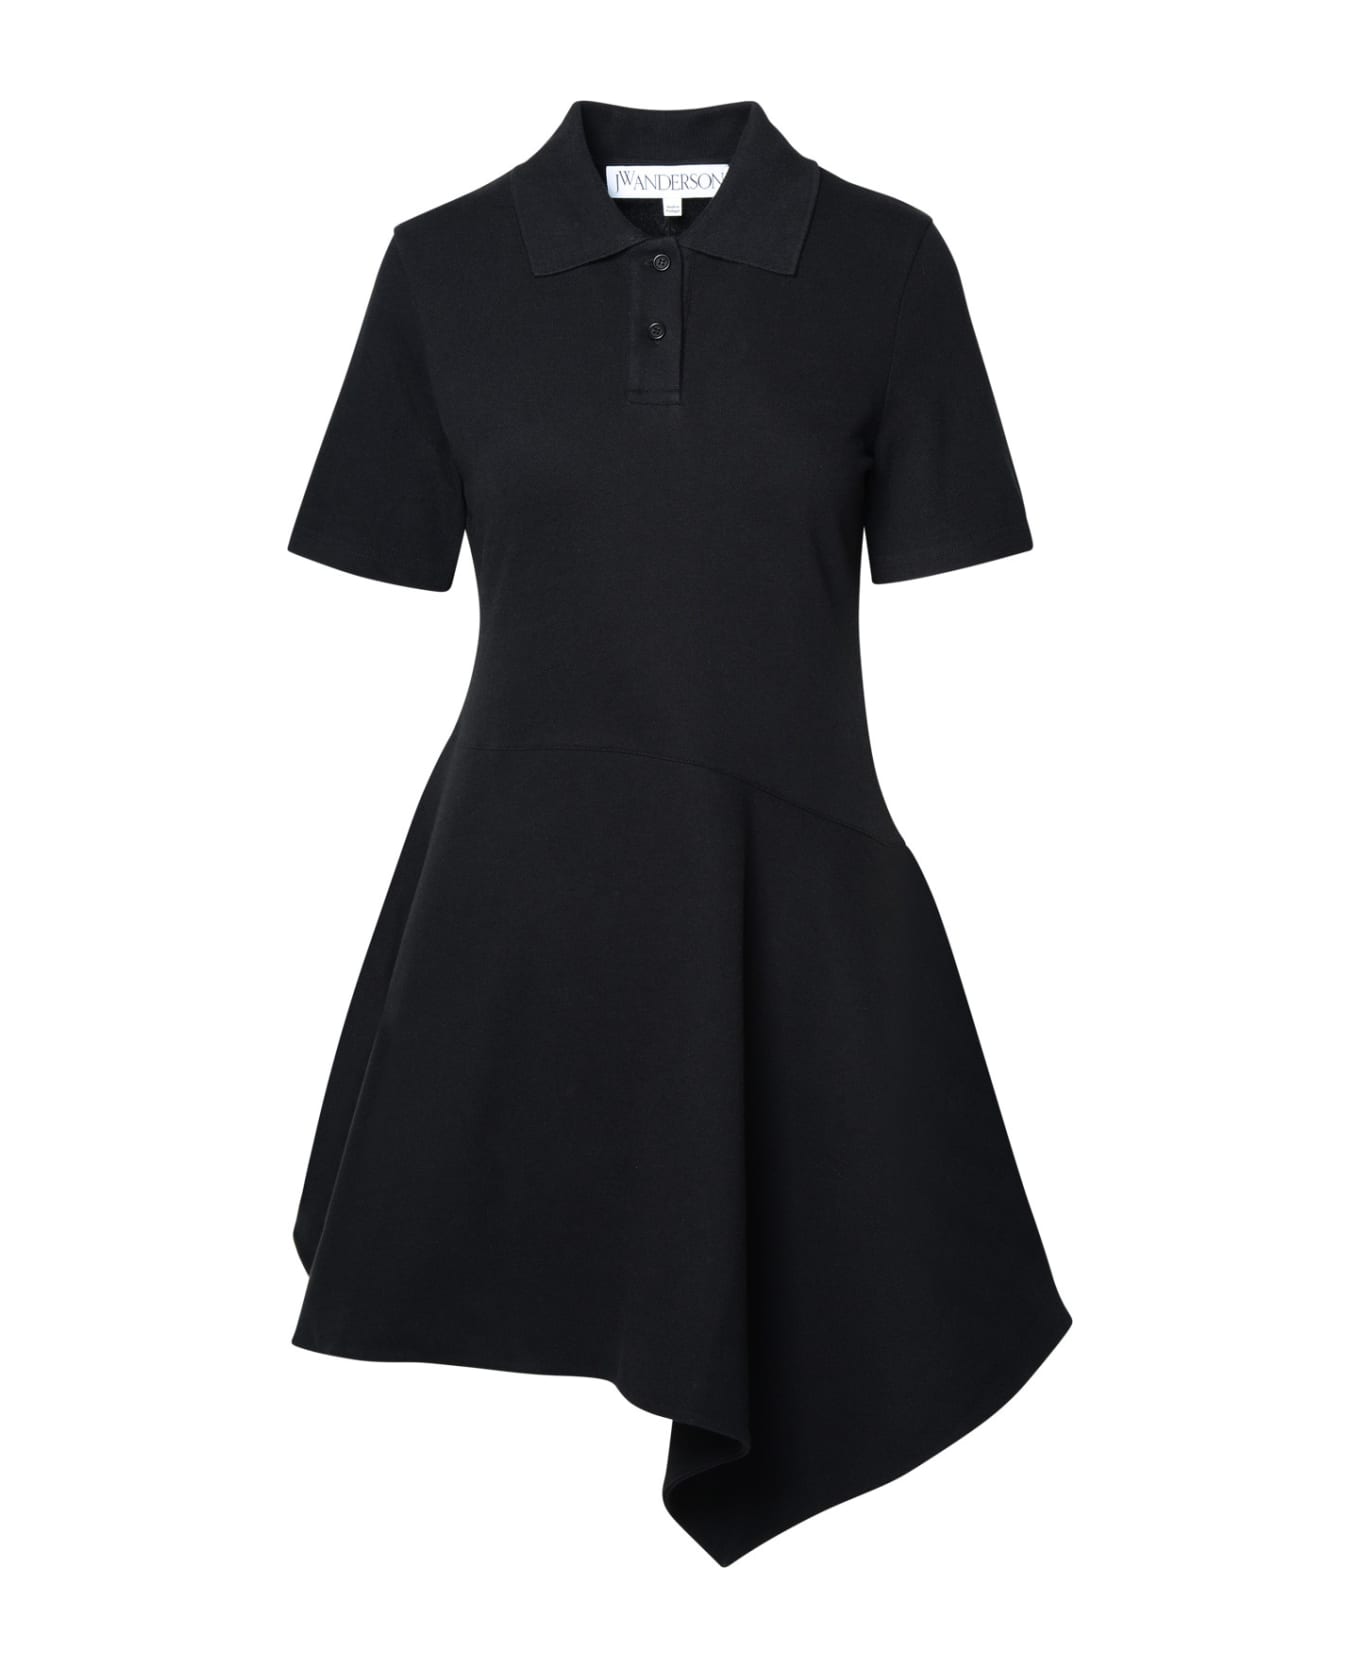 J.W. Anderson Black Cotton Dress - Black